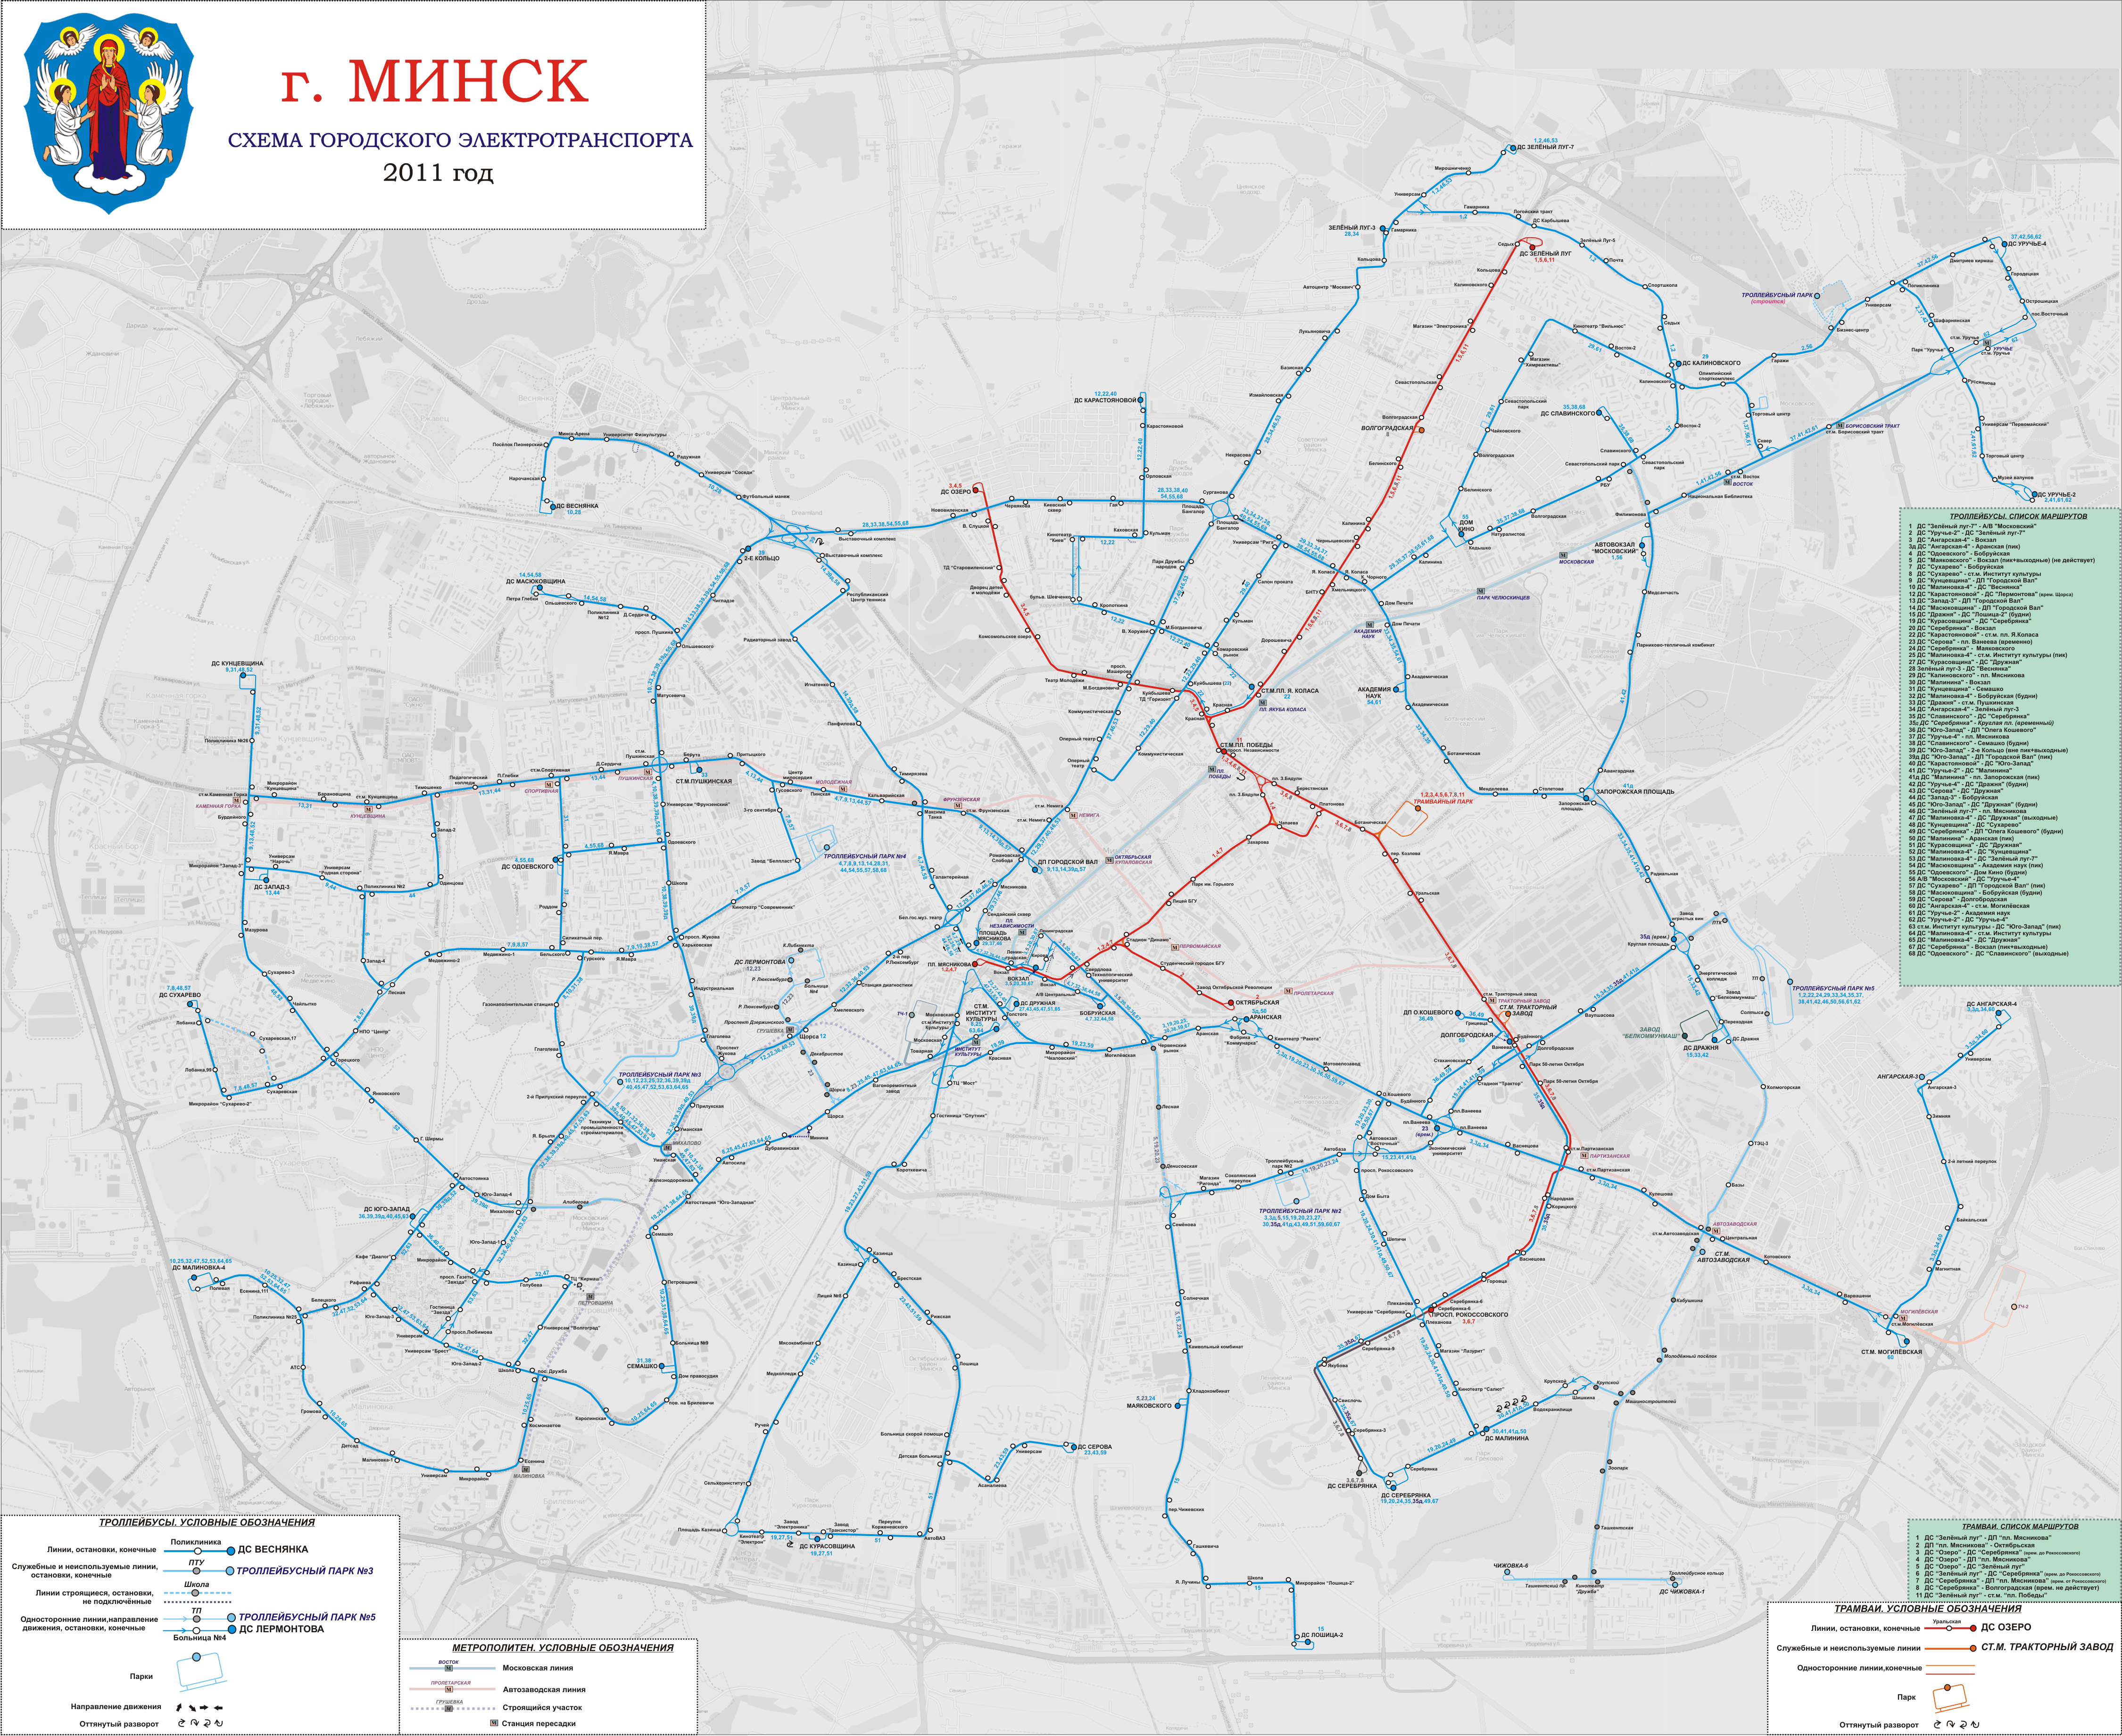 Minska — Maps